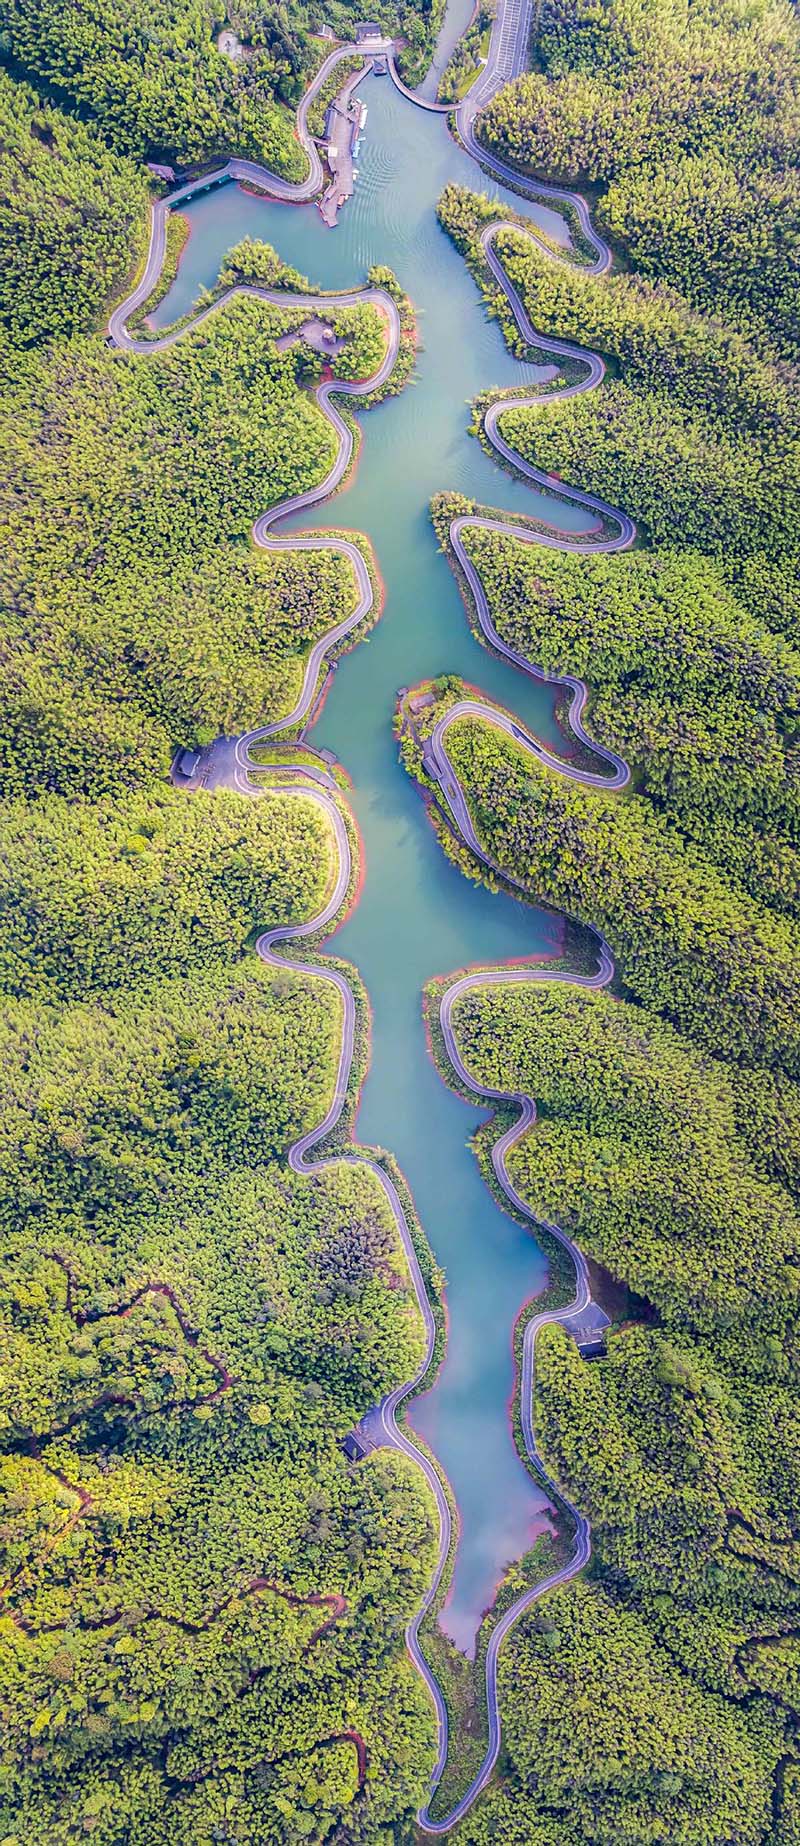 Bamboo Sea National Forest Park cuenta con lagos verdes, cascadas, bosques, arroyos, formación de tierras Danxia y cientos de millones de plantas de bambú. [Foto: Wang Zhongshu/ chinadaily.com.cn]